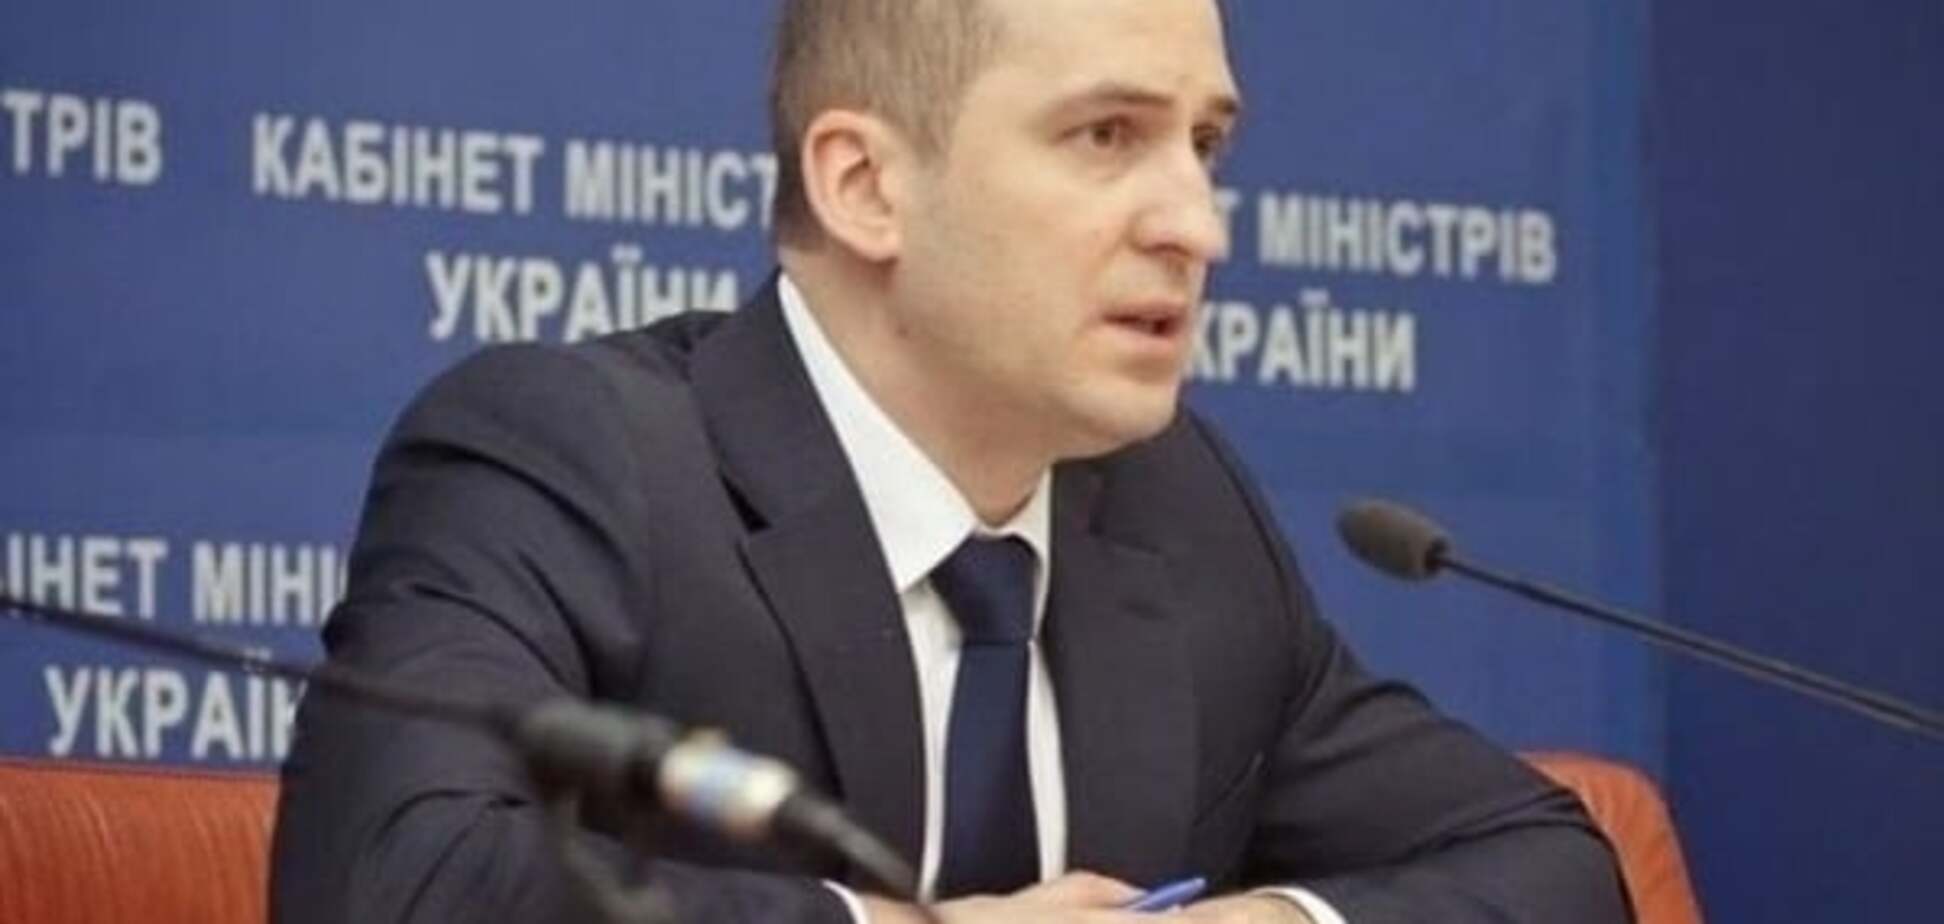 'Самопомiч' запросила міністра Павленка на розмову про відставку